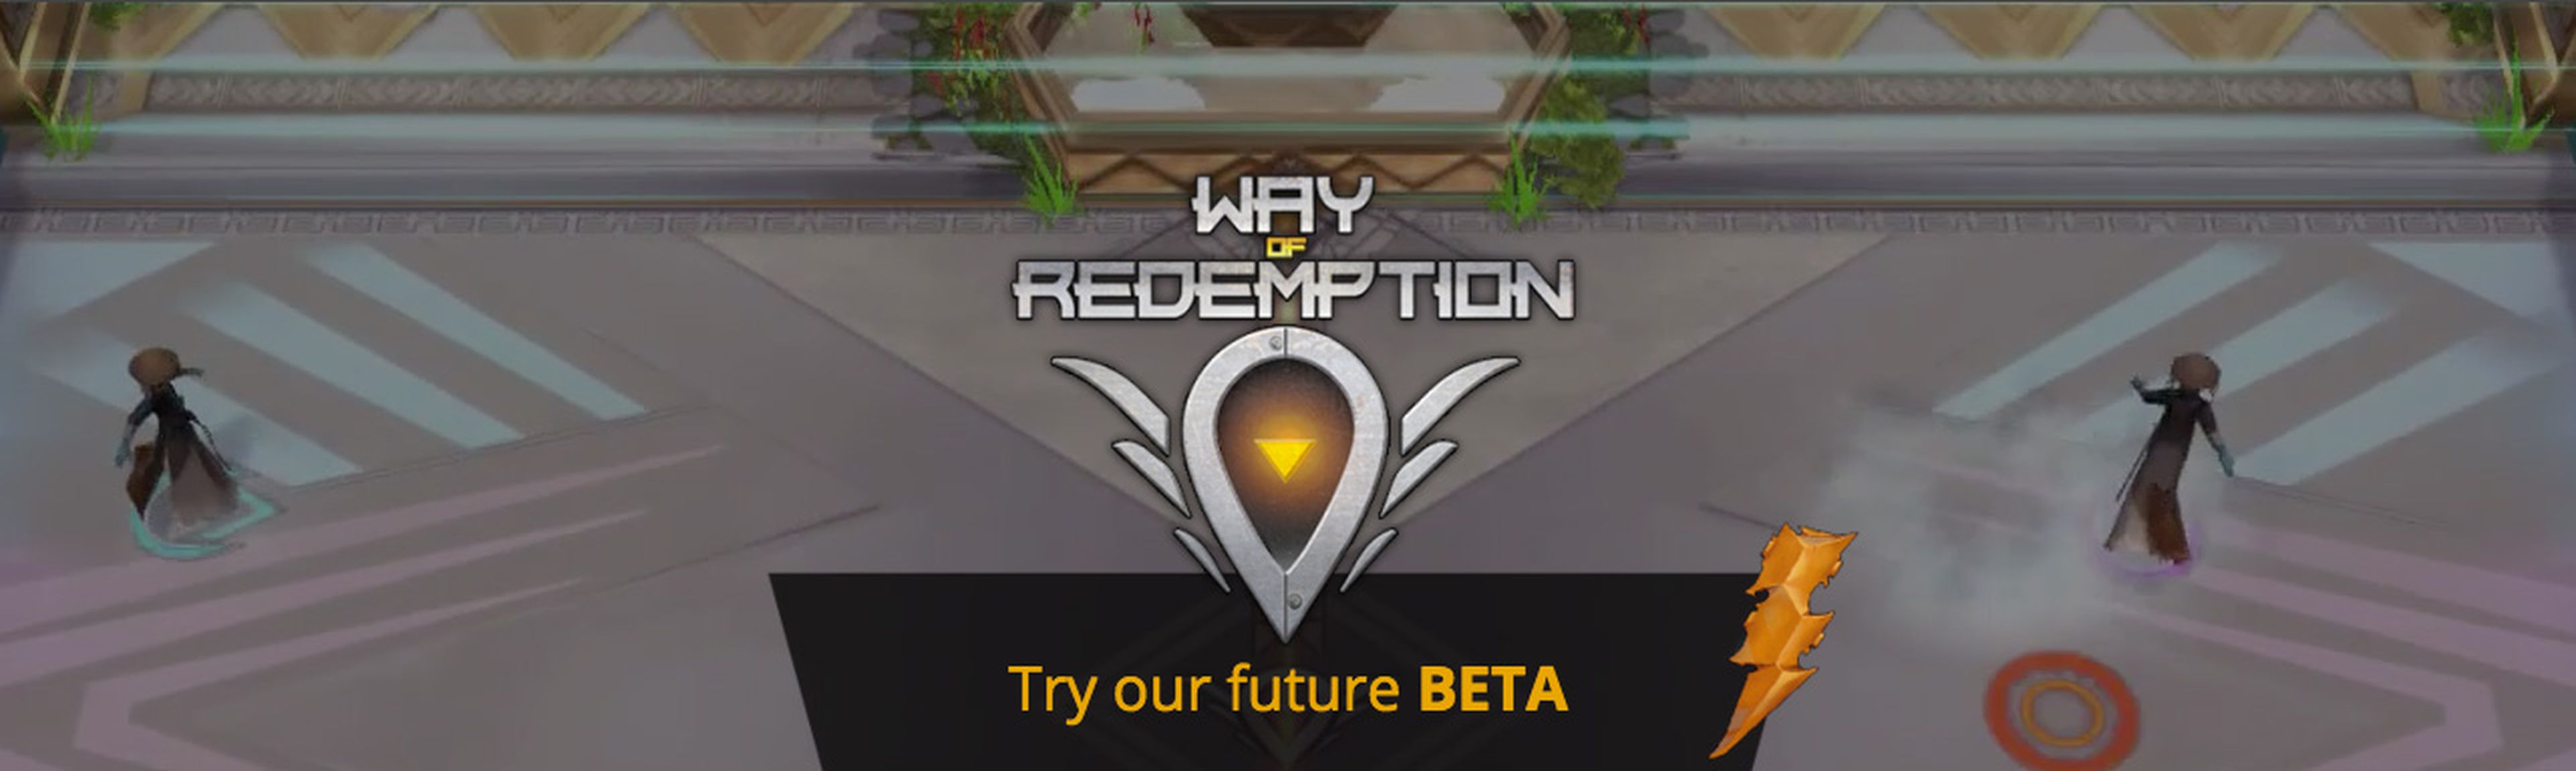 Way of Redemption Beta